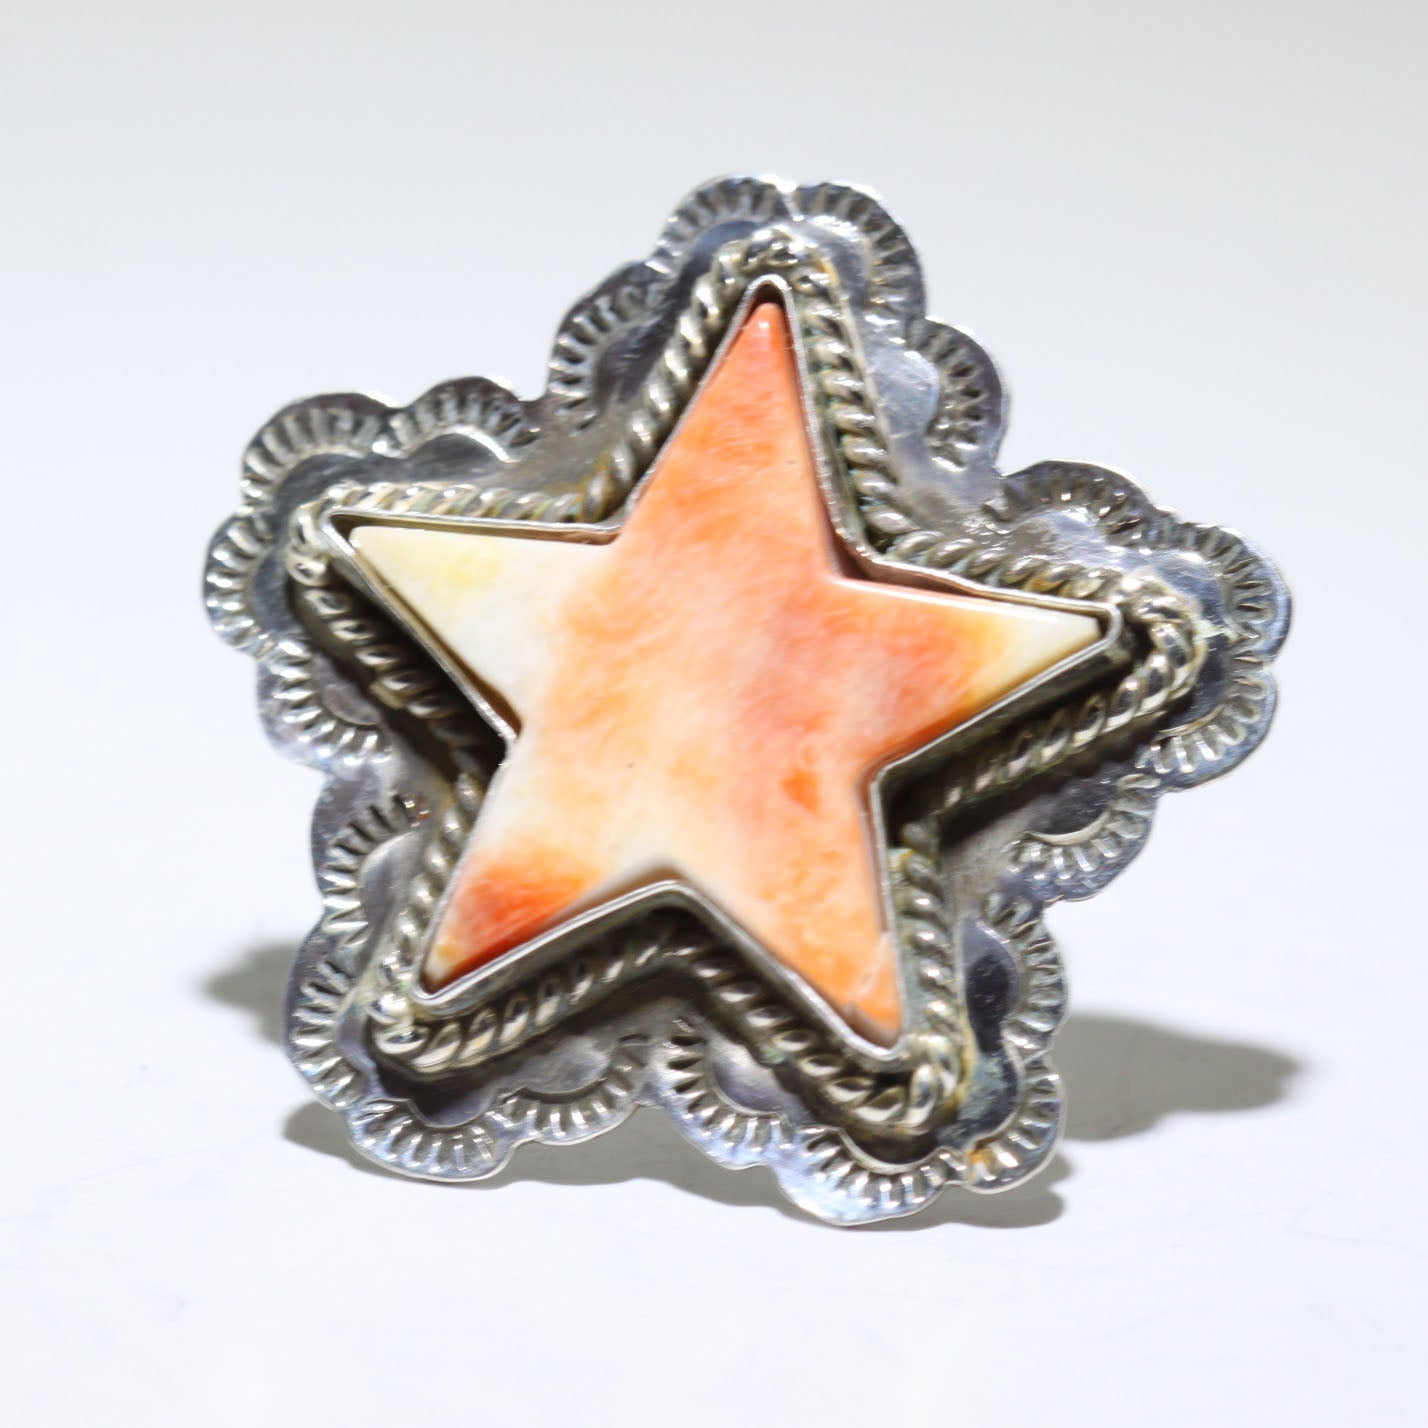 由弗雷德·彼得斯设计的多刺星星戒指